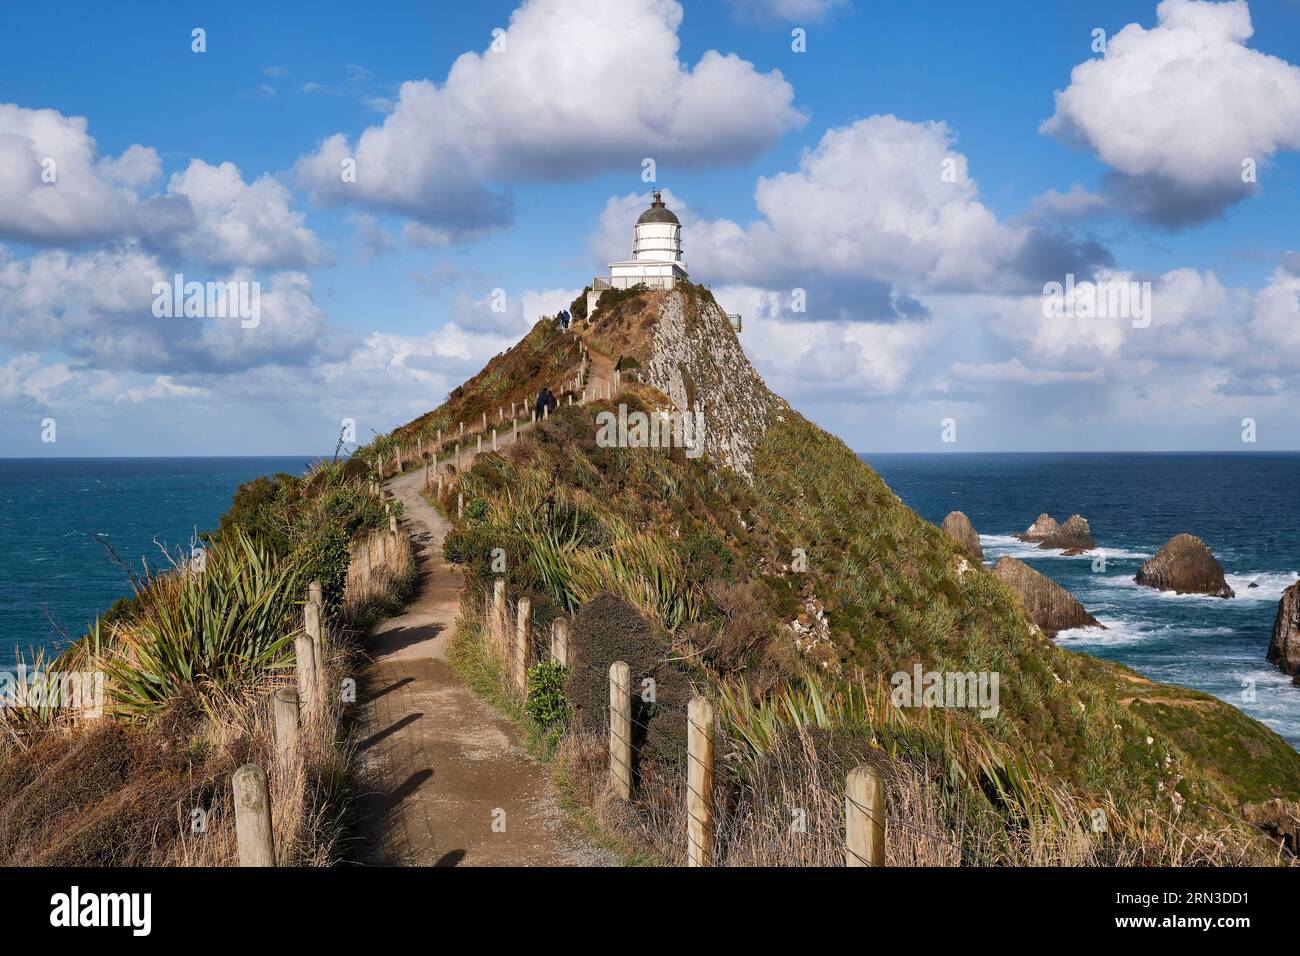 Nouvelle-Zélande, Île du Sud, Catlins Coast, Nugget point, phare de Nugget point Banque D'Images